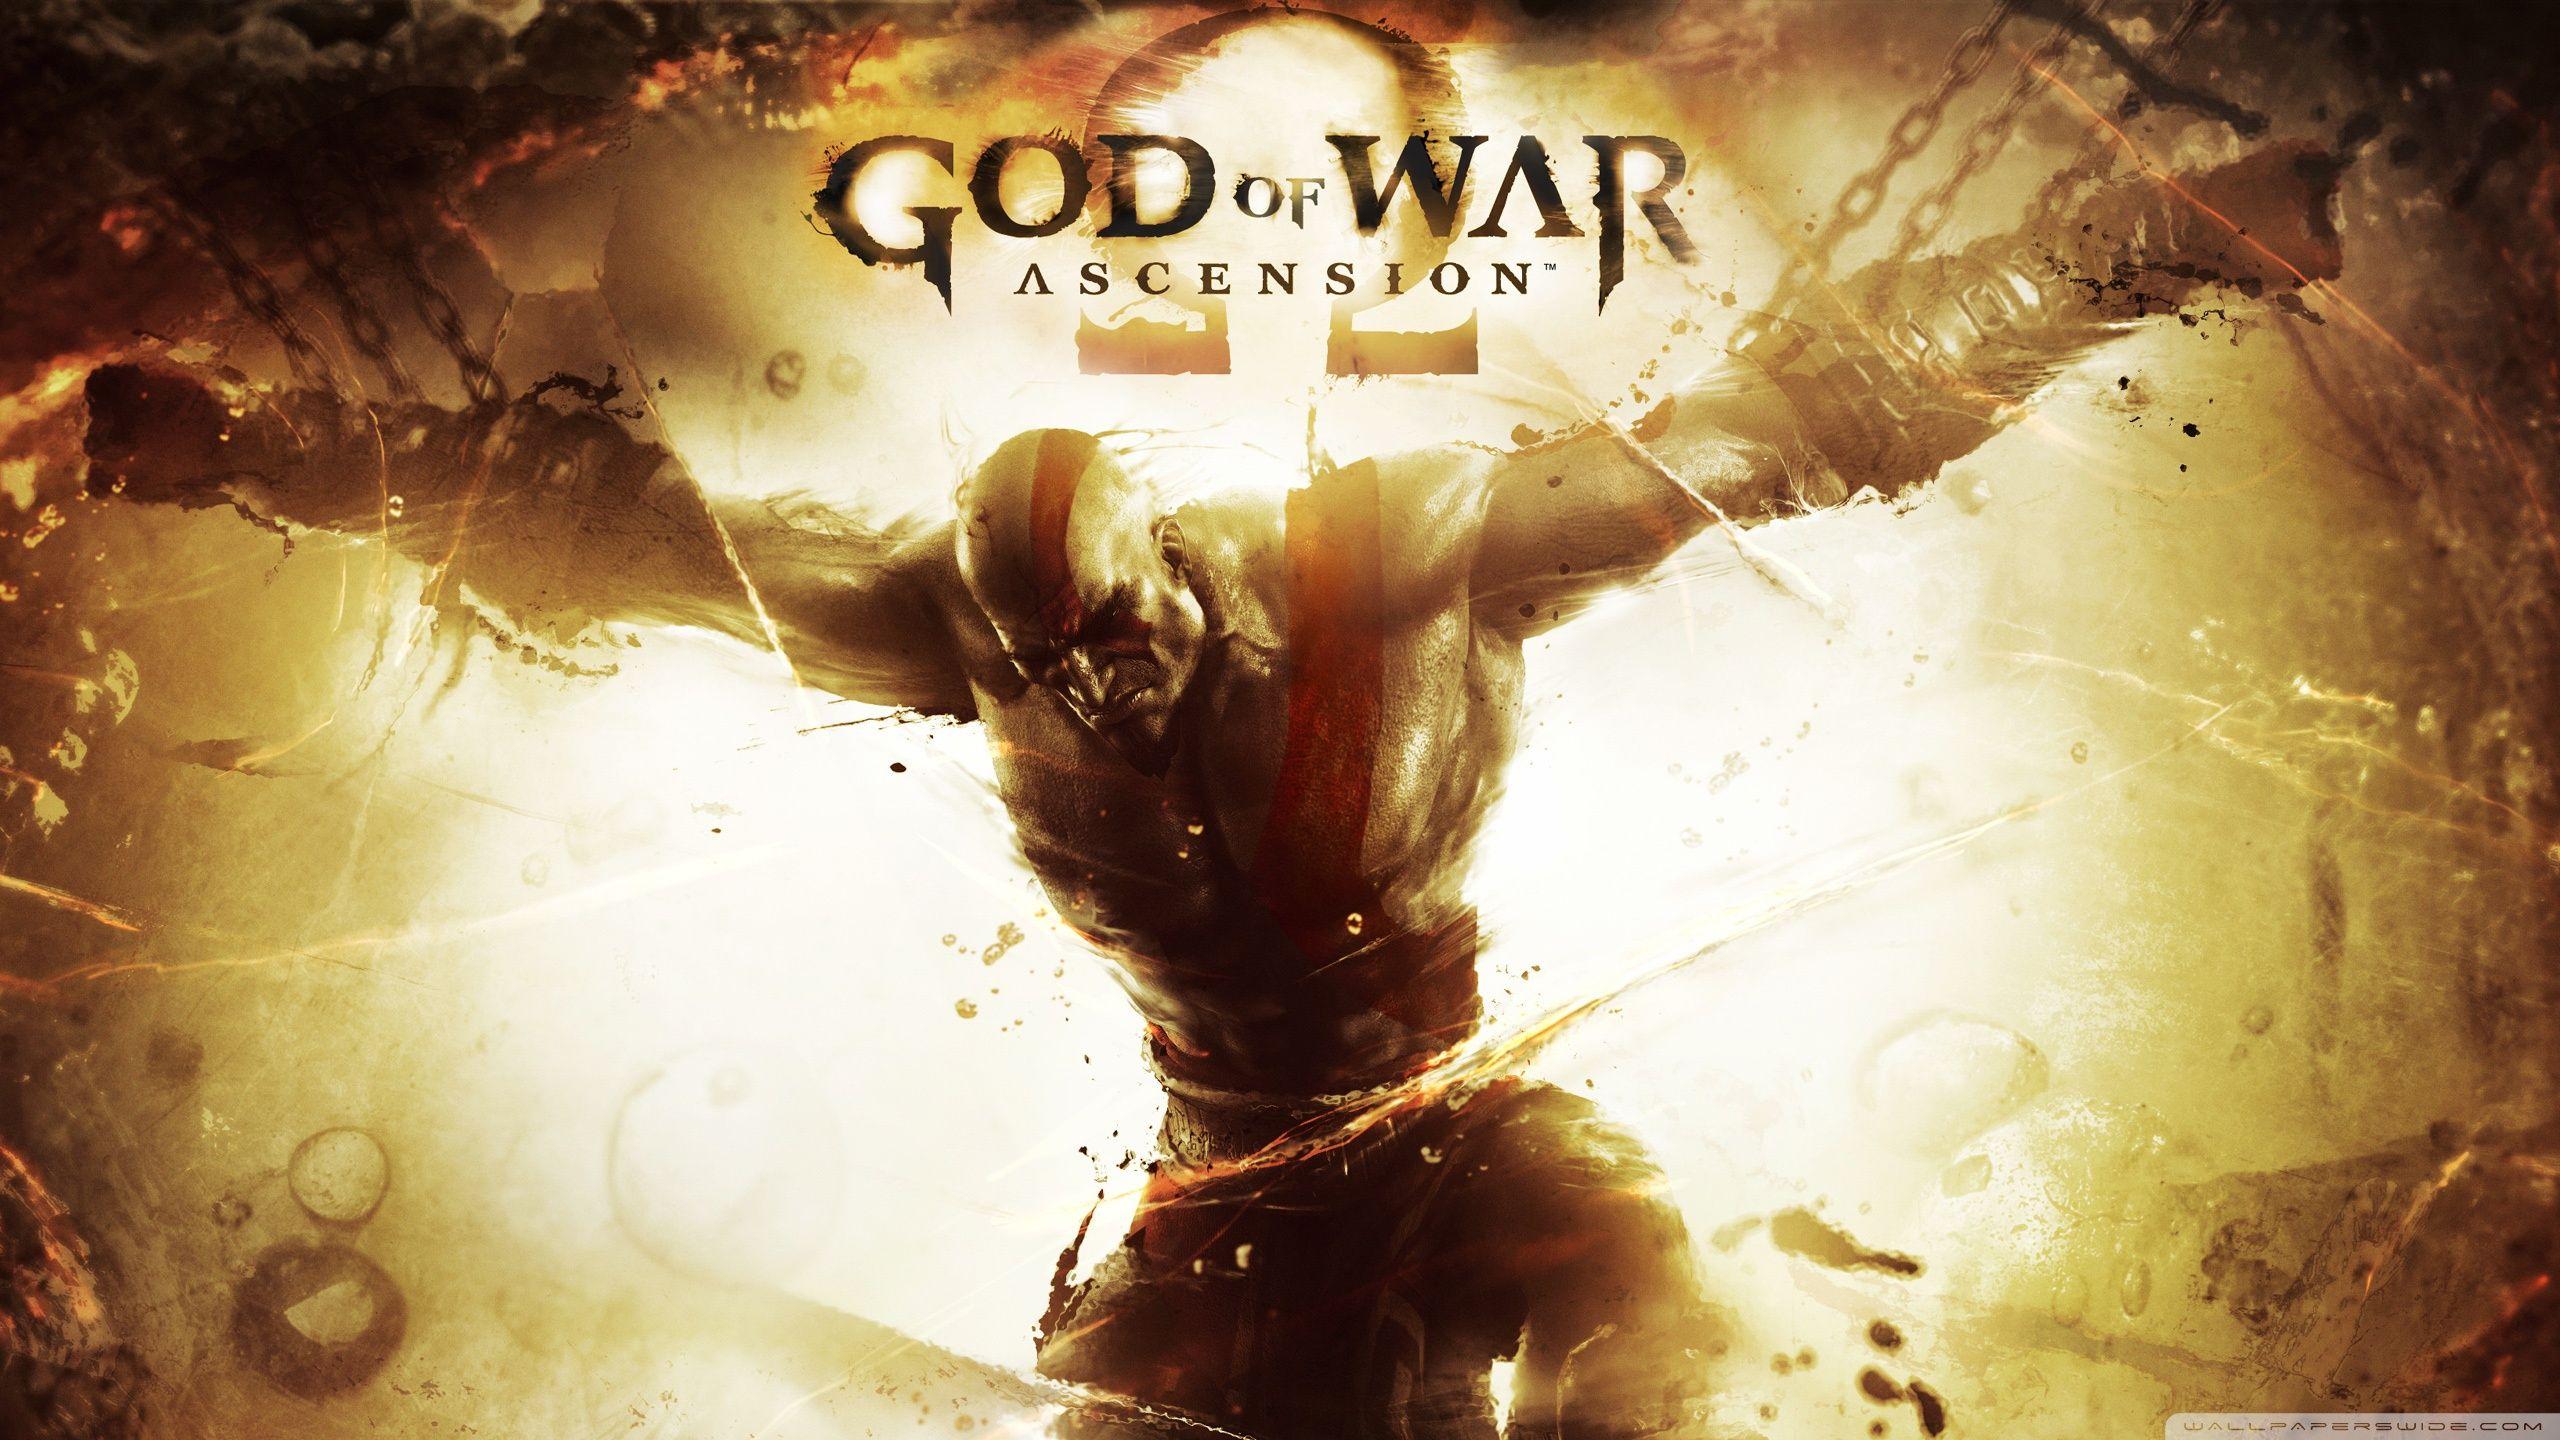 God of War: Ascension HD desktop wallpaper, High Definition